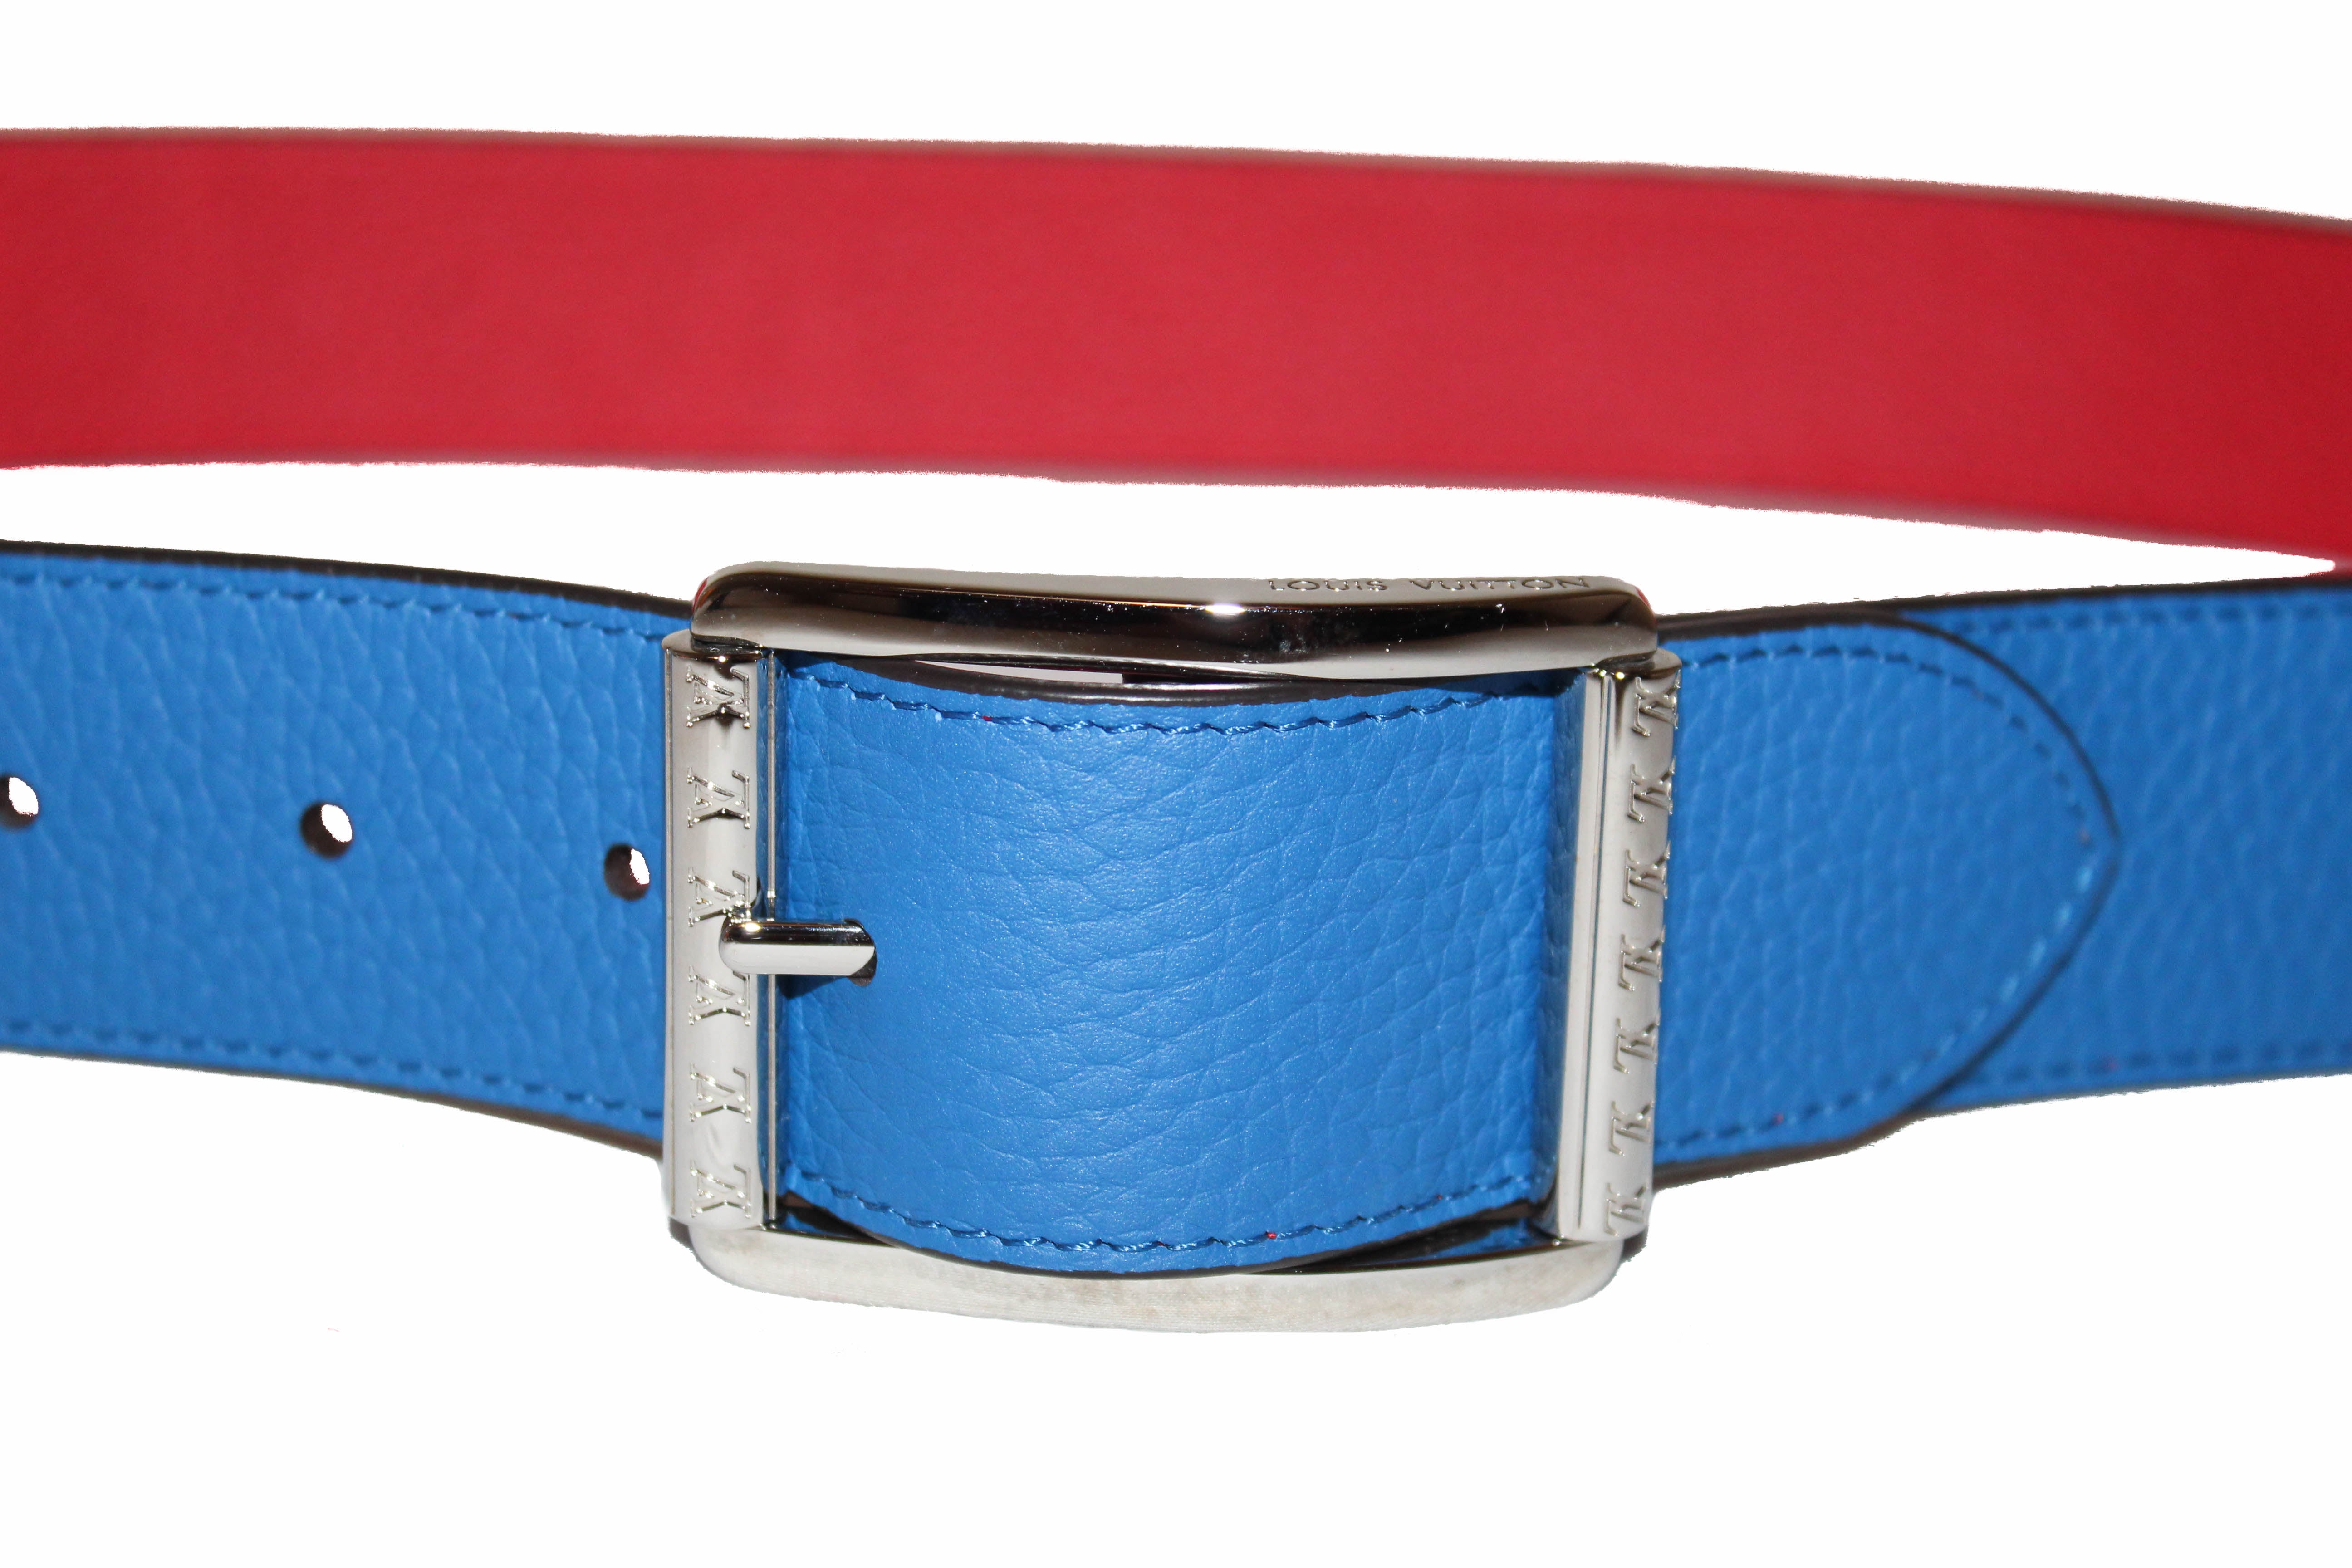 Louis Vuitton Navy Blue/Red Web Dynamo Buckle Belt 100 CM Louis Vuitton